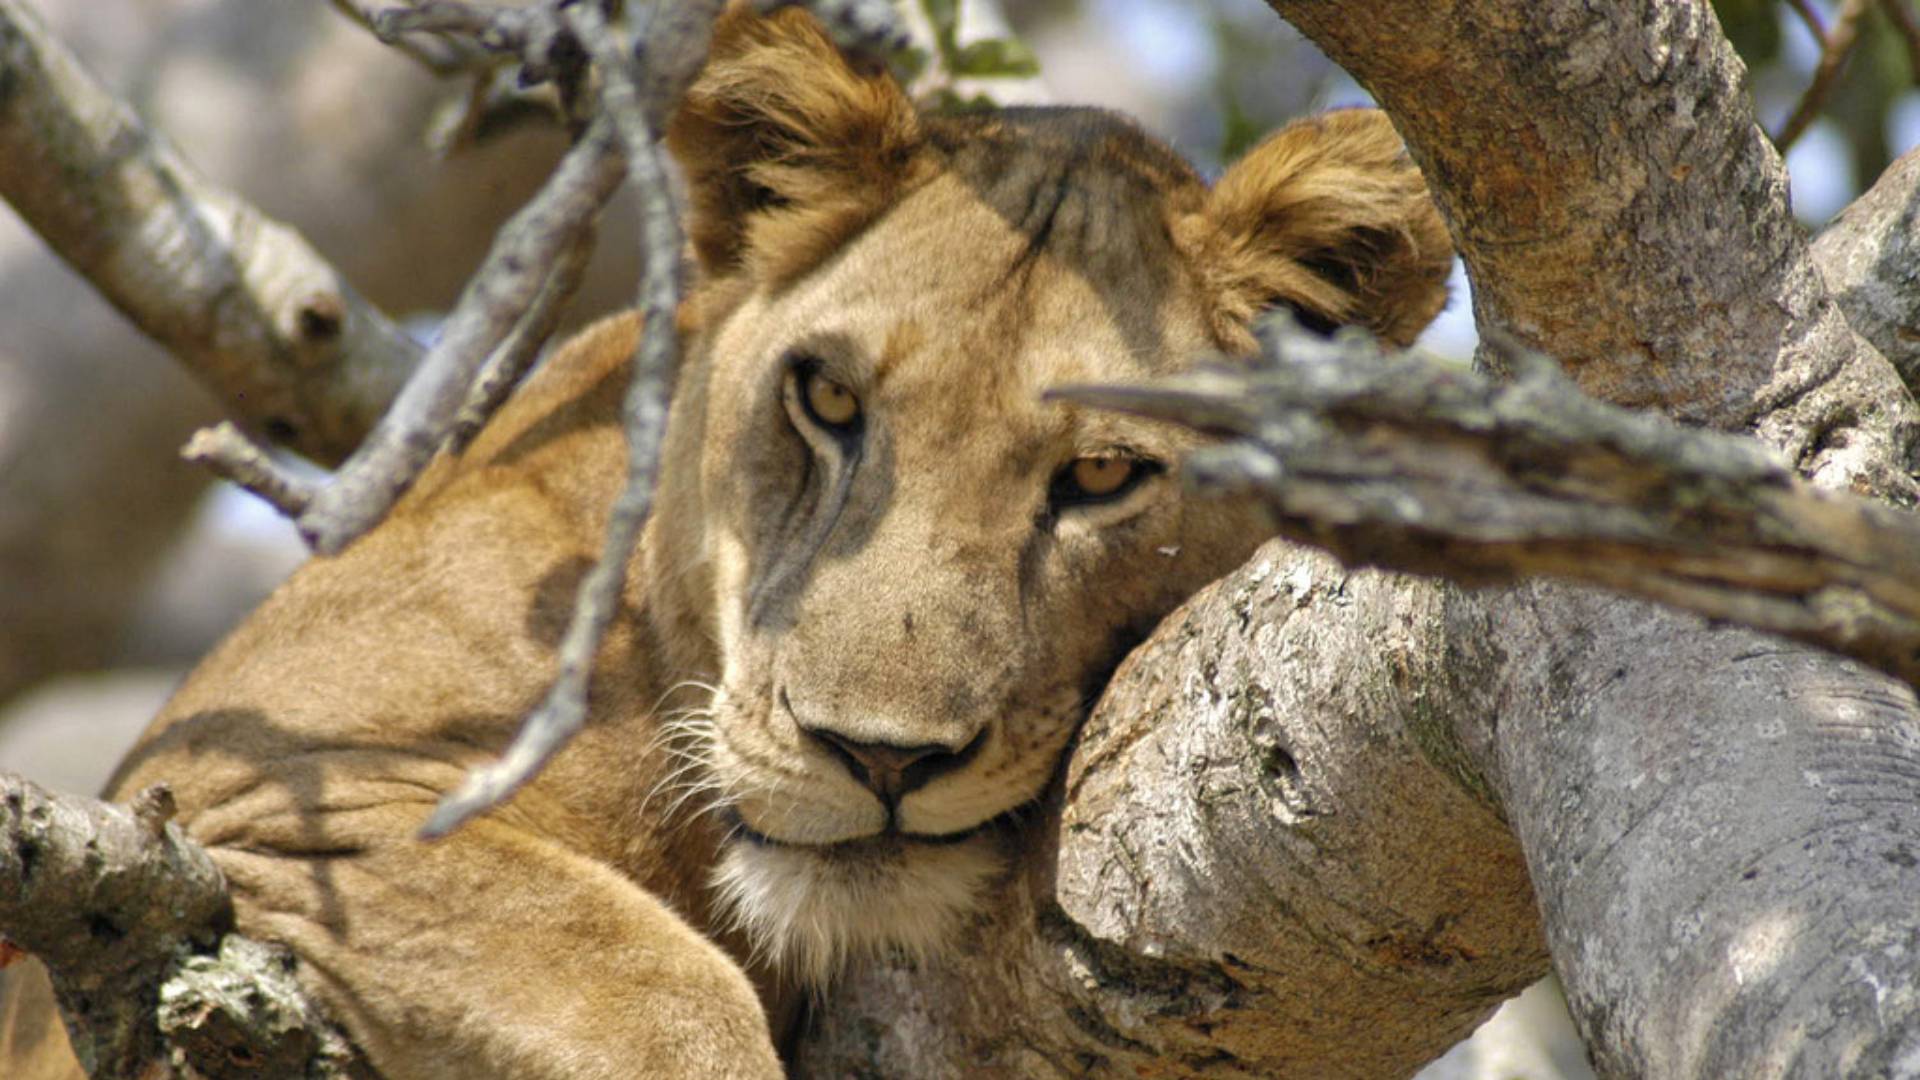 13 Days Classic Uganda Wildlife Uganda Safari